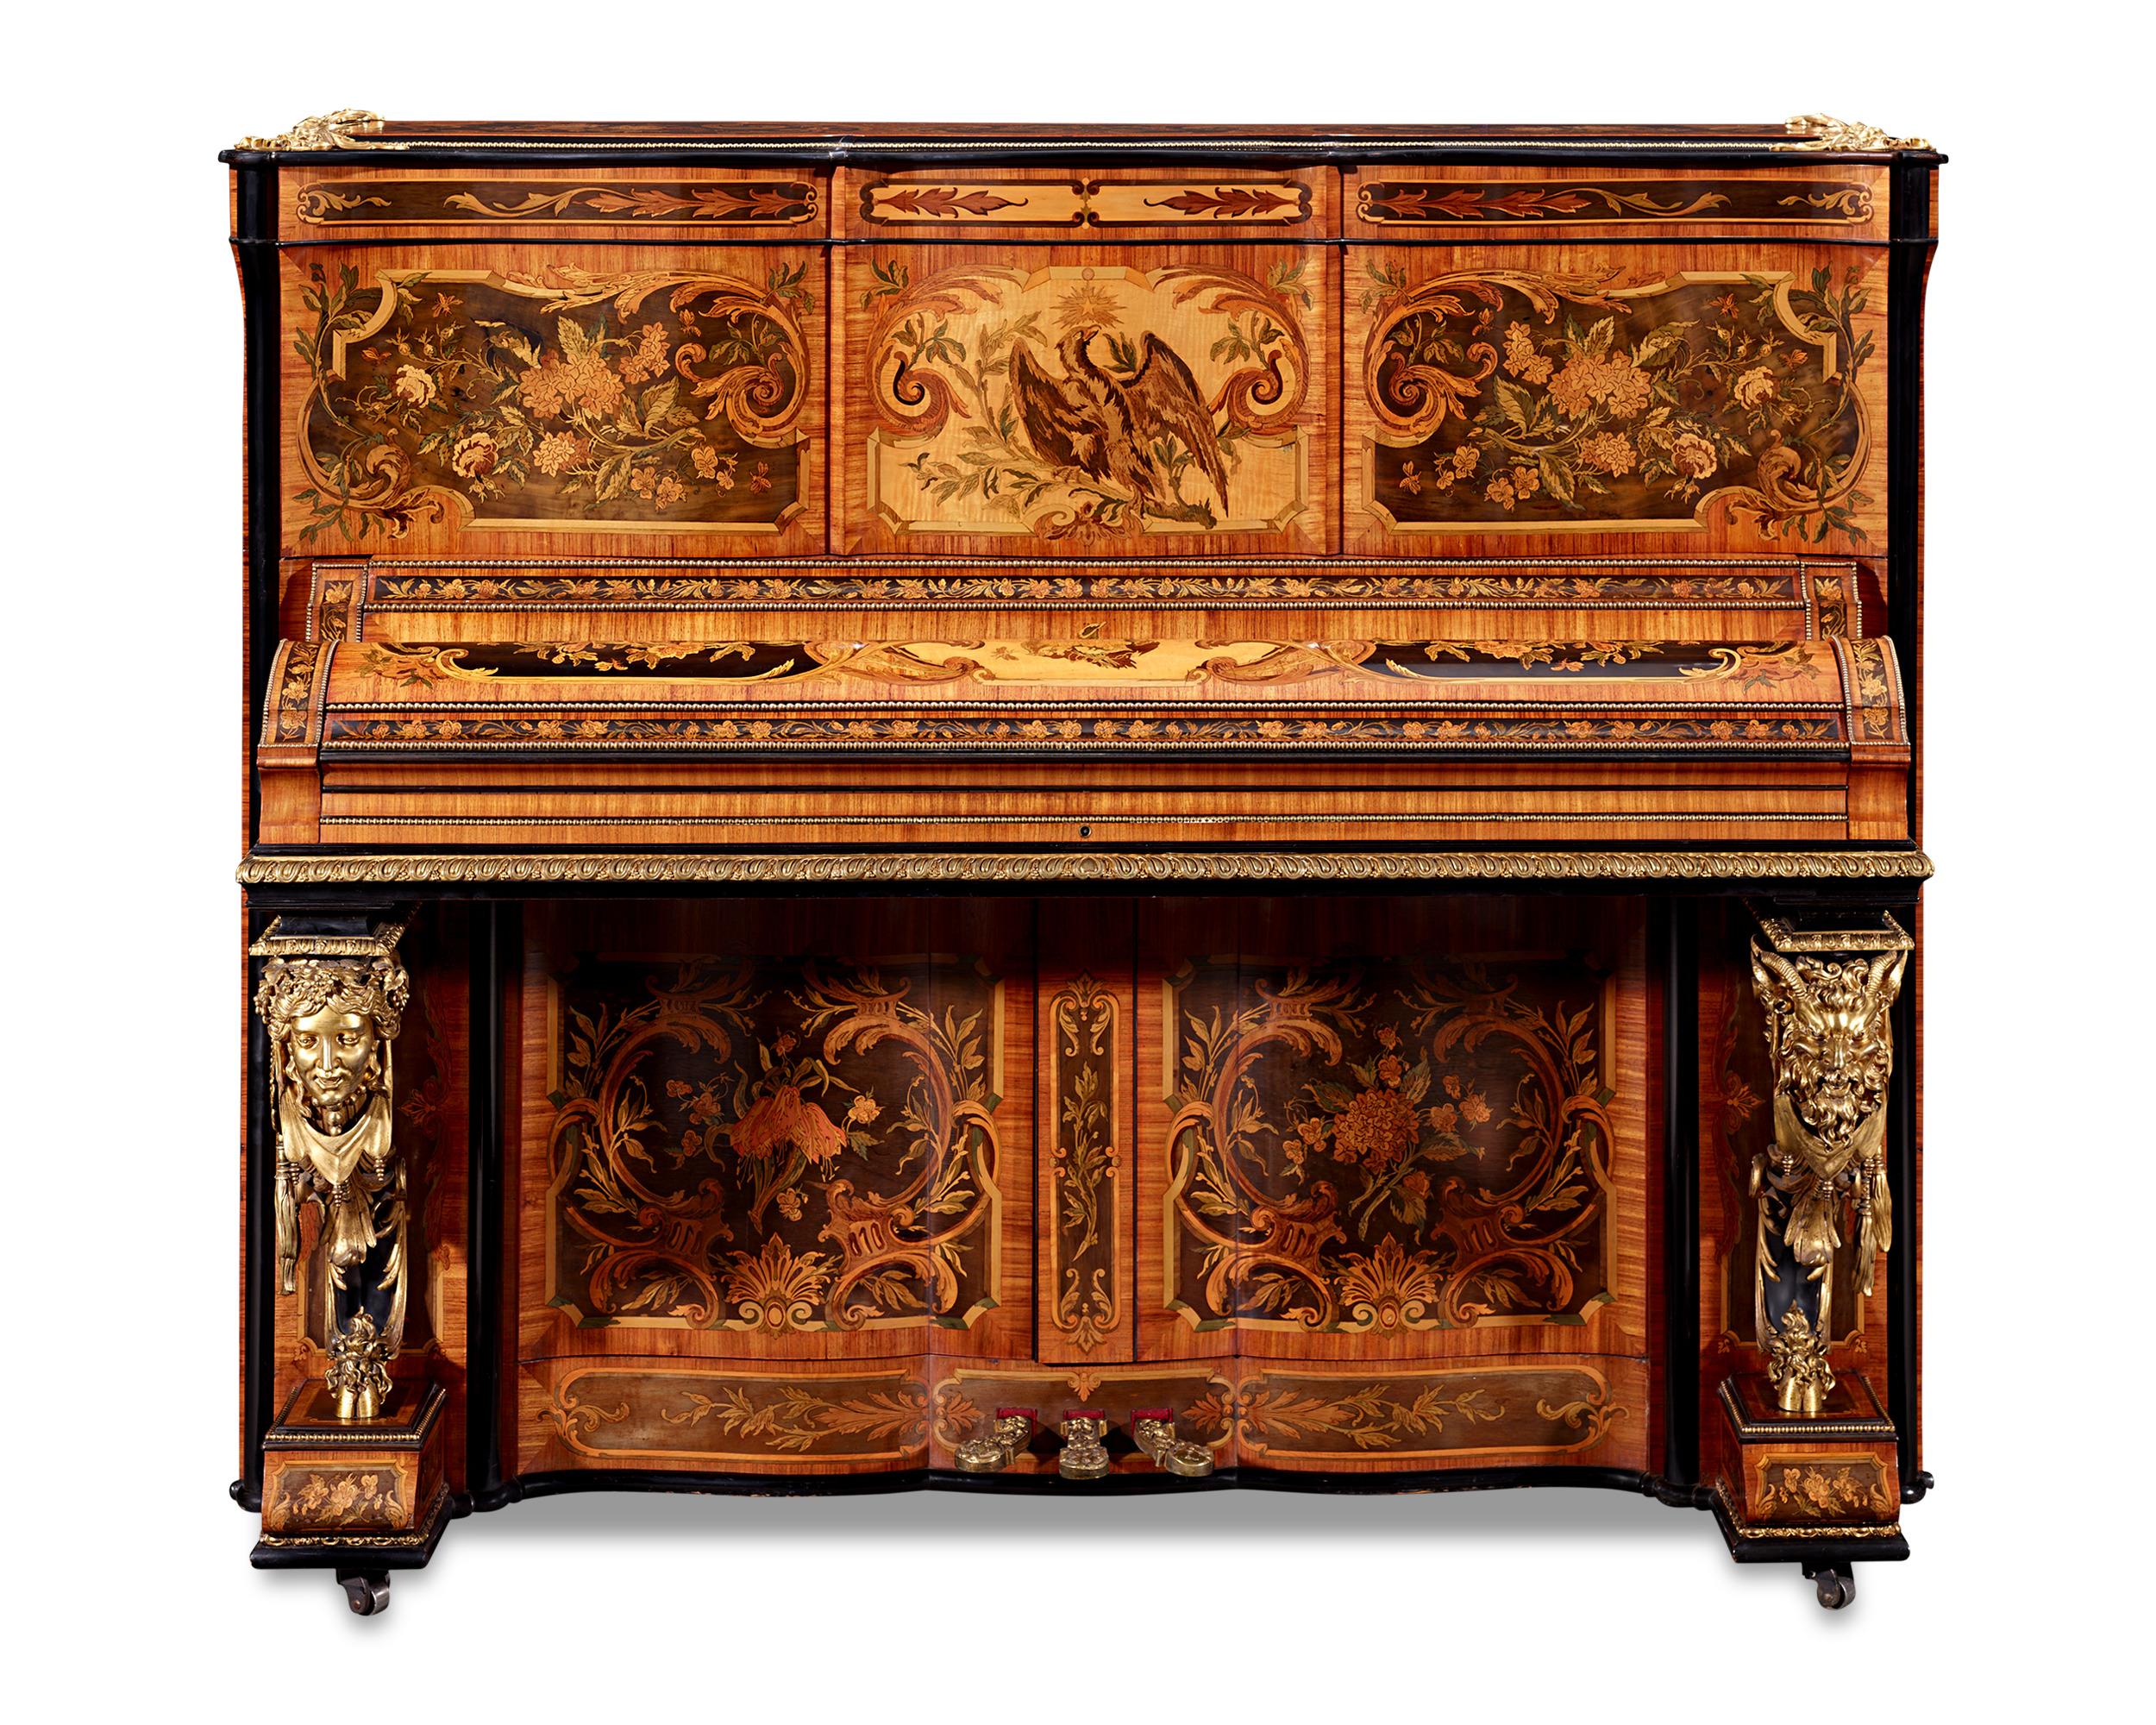 Fabriqué par le célèbre artisan et auteur français Claude Pianos, ce piano a été présenté à la célèbre exposition du Crystal Palace à Londres en 1851, où il a été récompensé pour sa qualité d'exécution. Trois ans plus tard, lors de l'Exposition